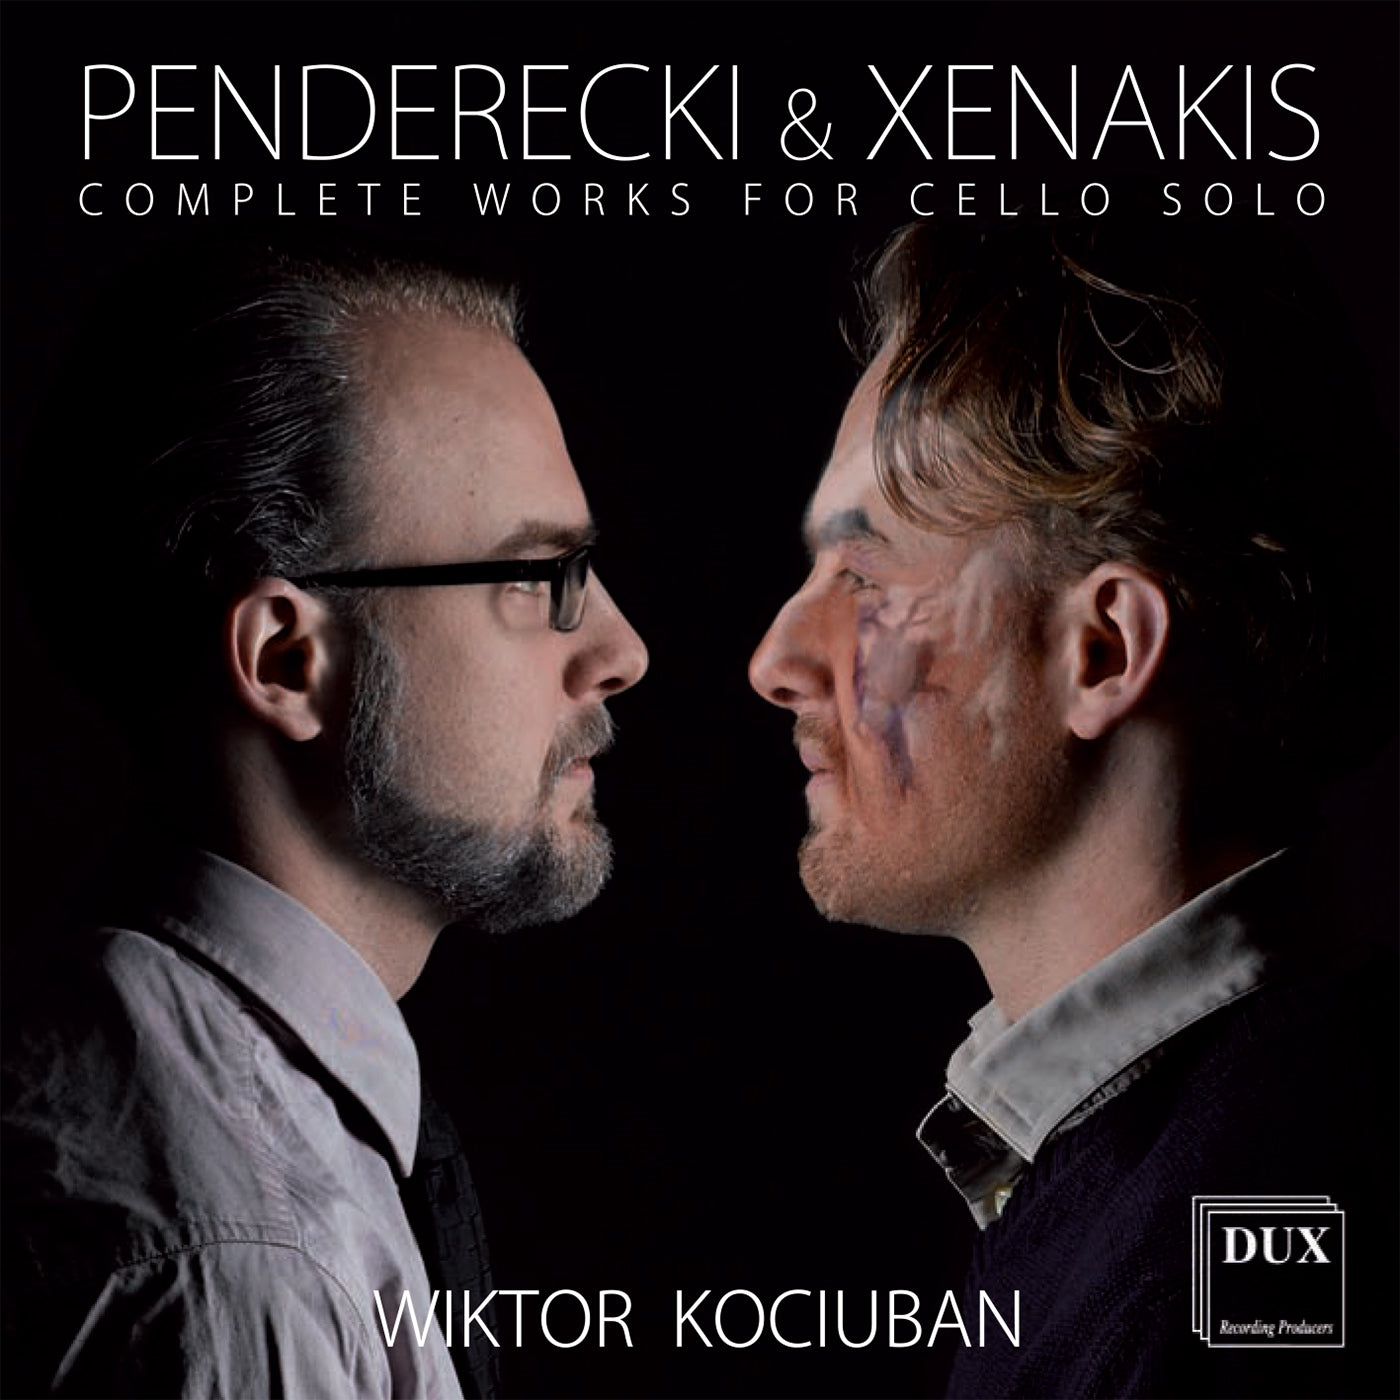 Penderecki & Xenakis: Complete Works For Cello Solo  Wiktor Kociuban - Cello